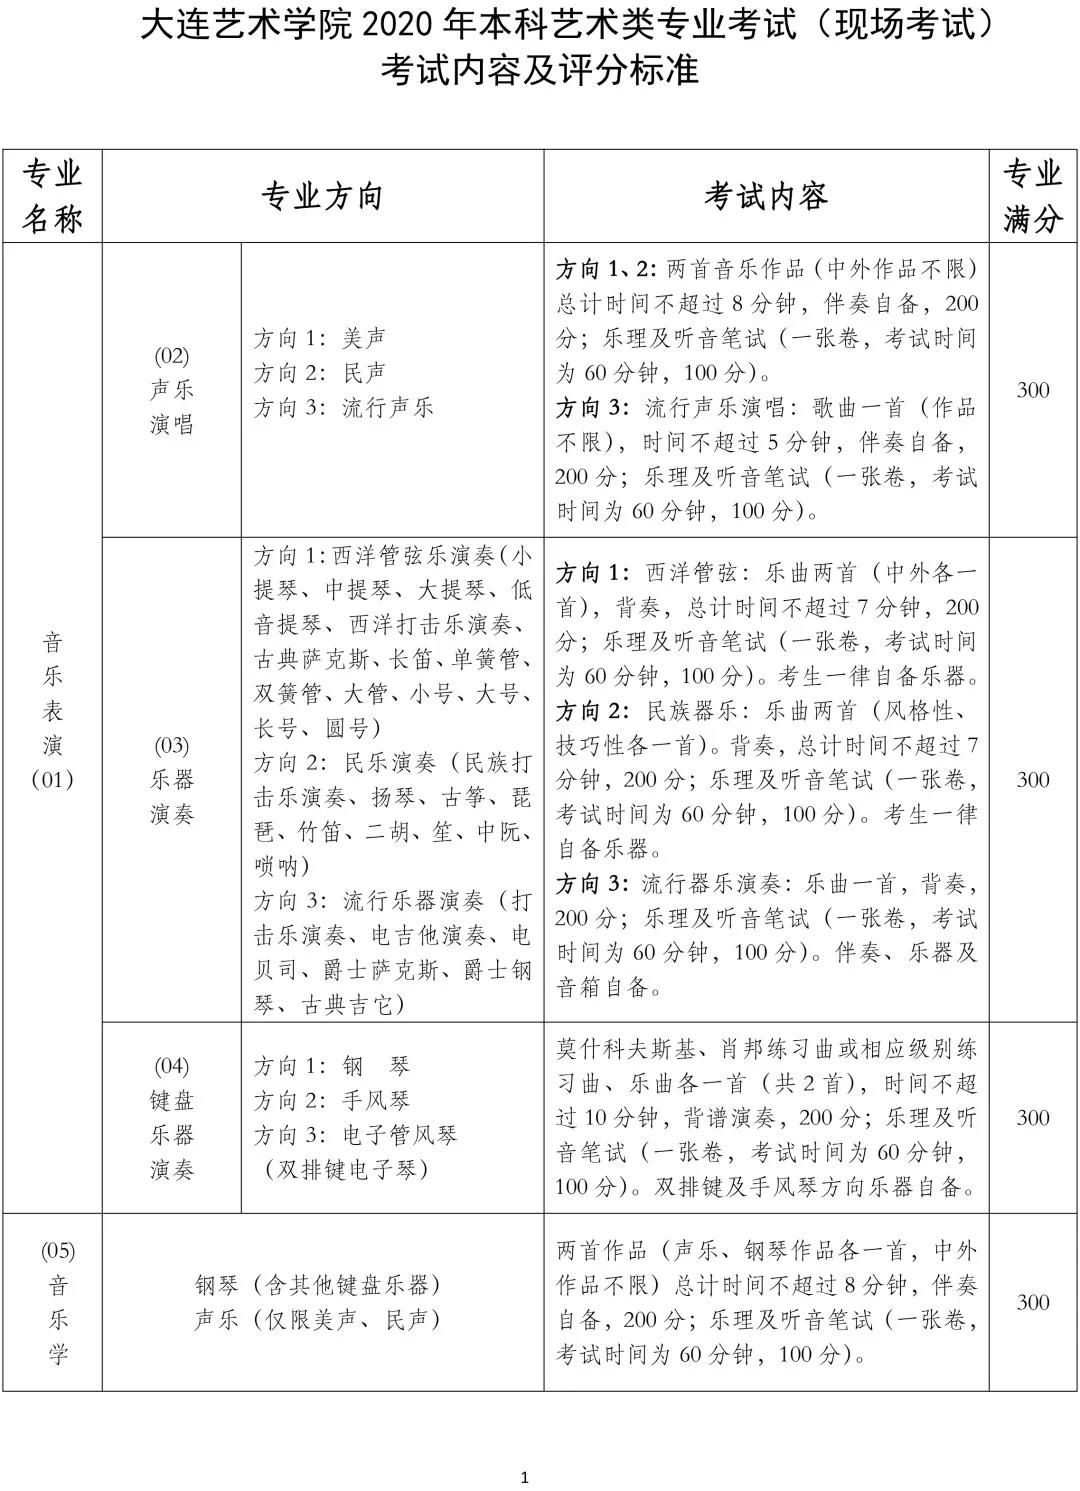 大连艺术学院2020年黑龙江省艺术类专业校考调整方案的公告